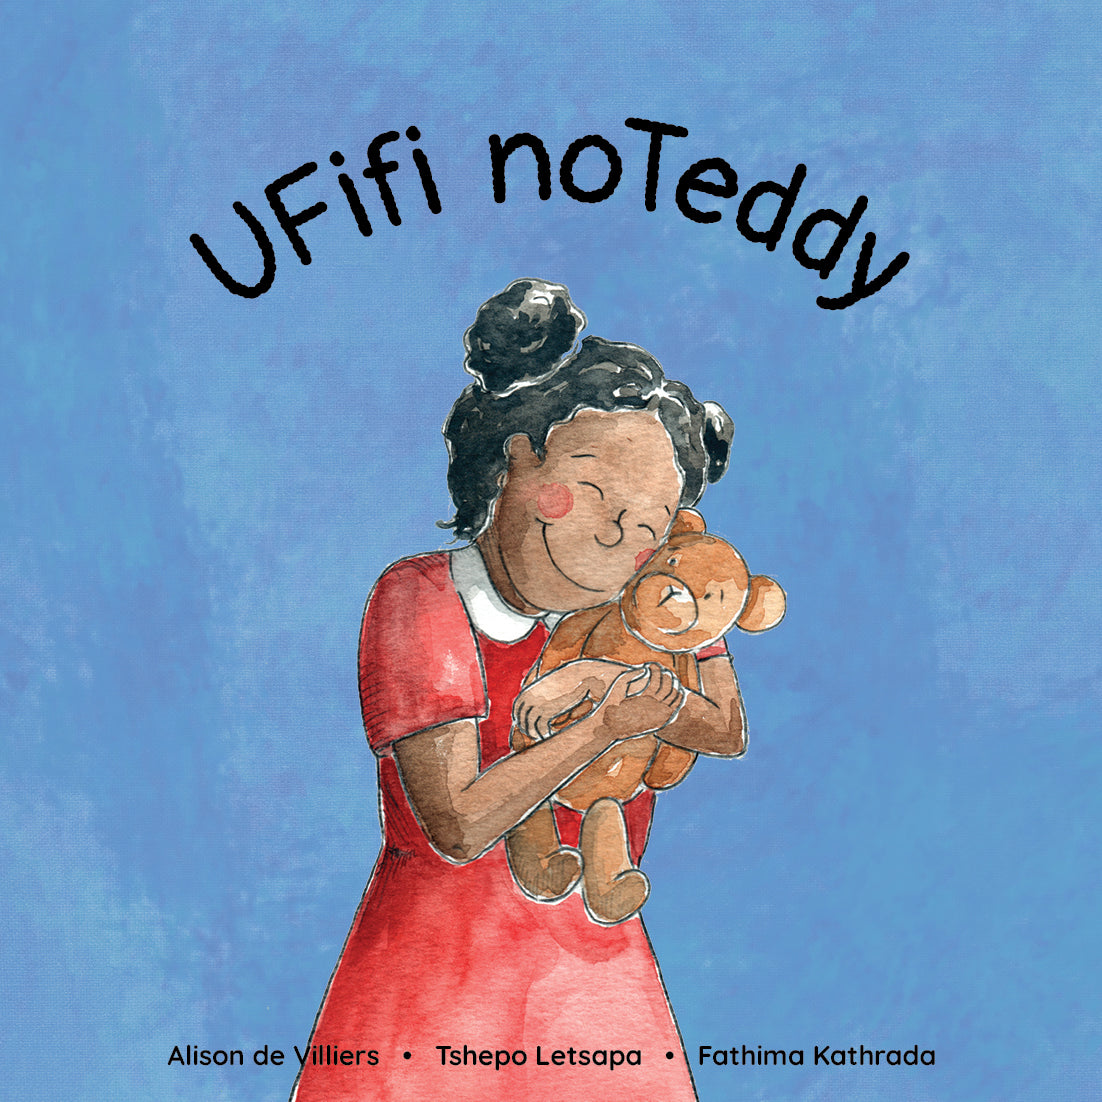 uFifi noTeddy (Fifi and Teddy)